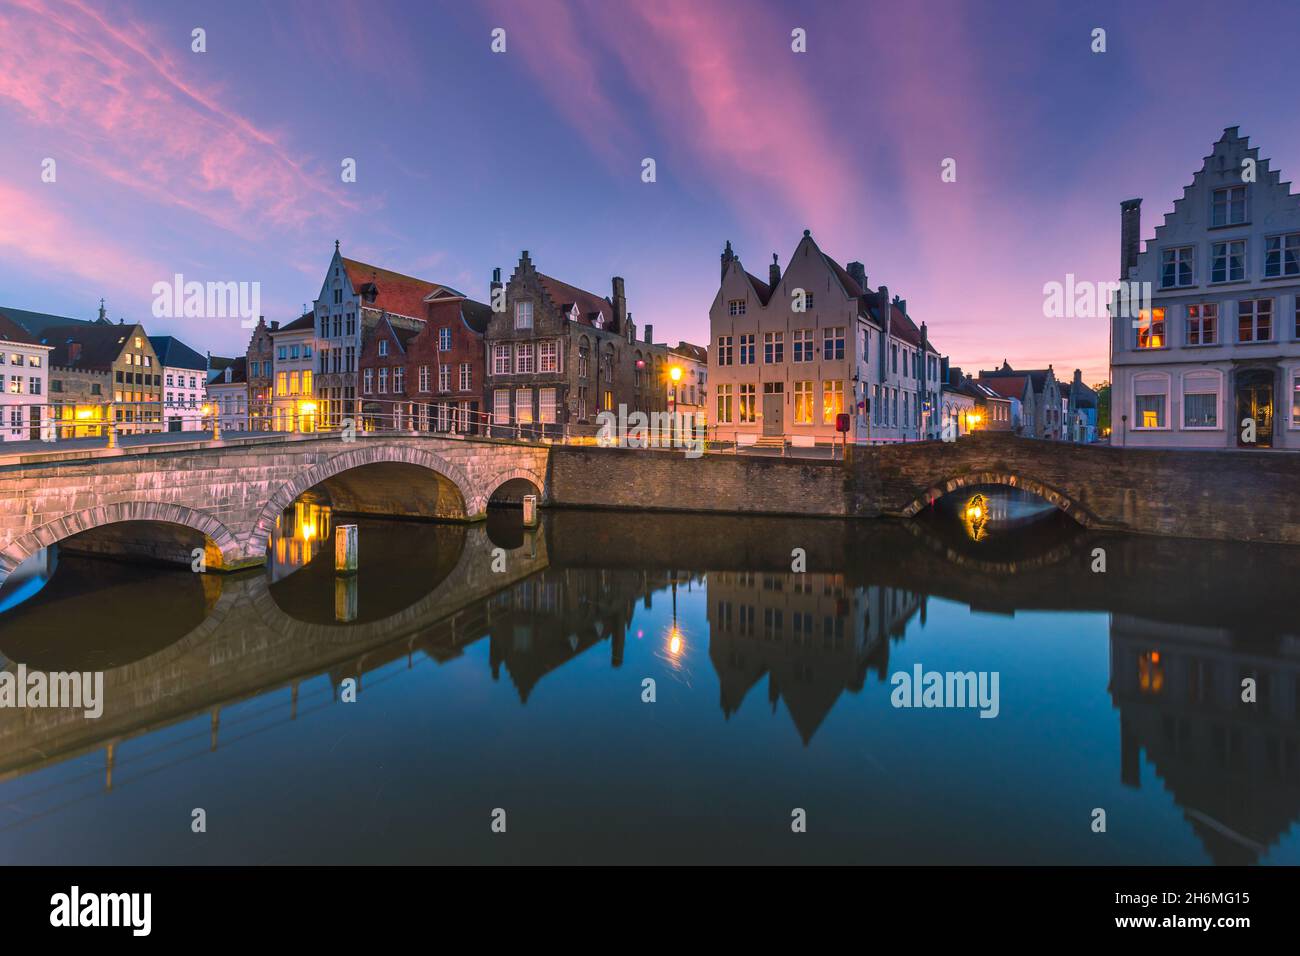 Bâtiments médiévaux historiques le long d'un canal à Bruges pendant le coucher de soleil étonnant, Belgique Banque D'Images